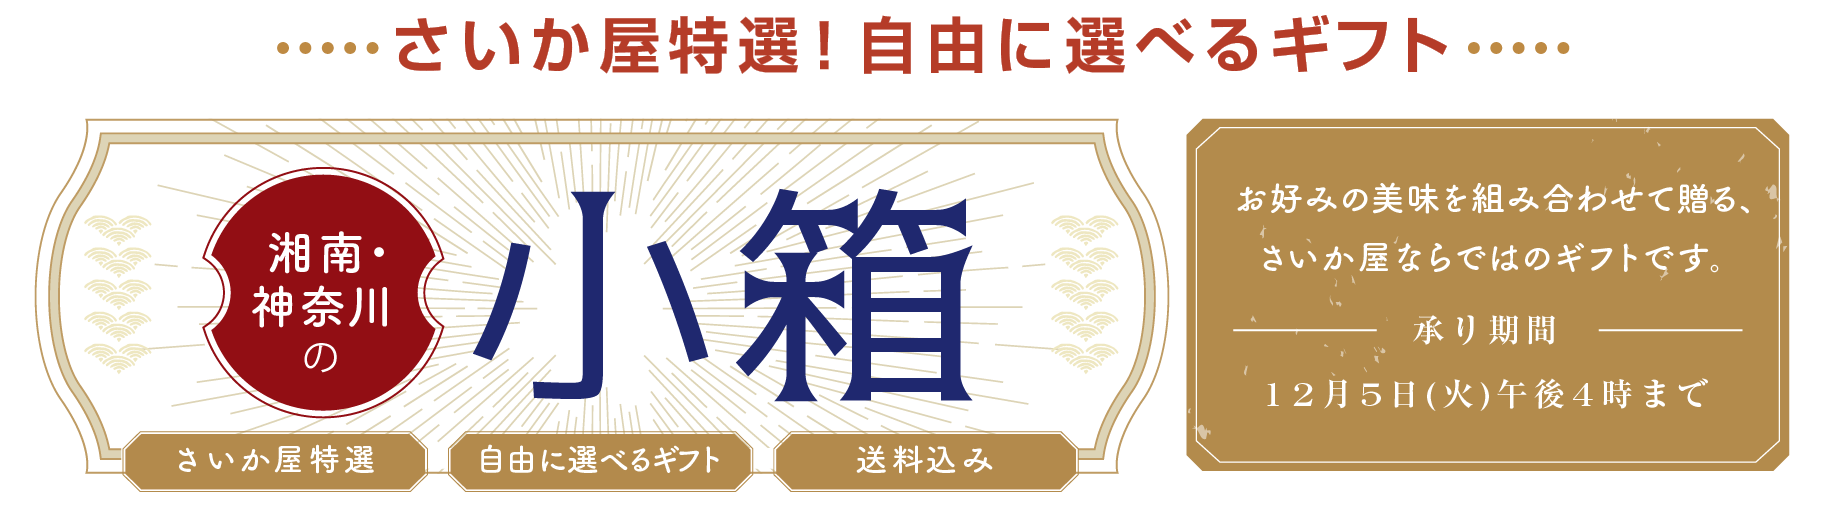 自由に選べるギフト 湘南・神奈川の小箱 お好みの美味を組み合わせて贈る、さいか屋ならではのギフトです。